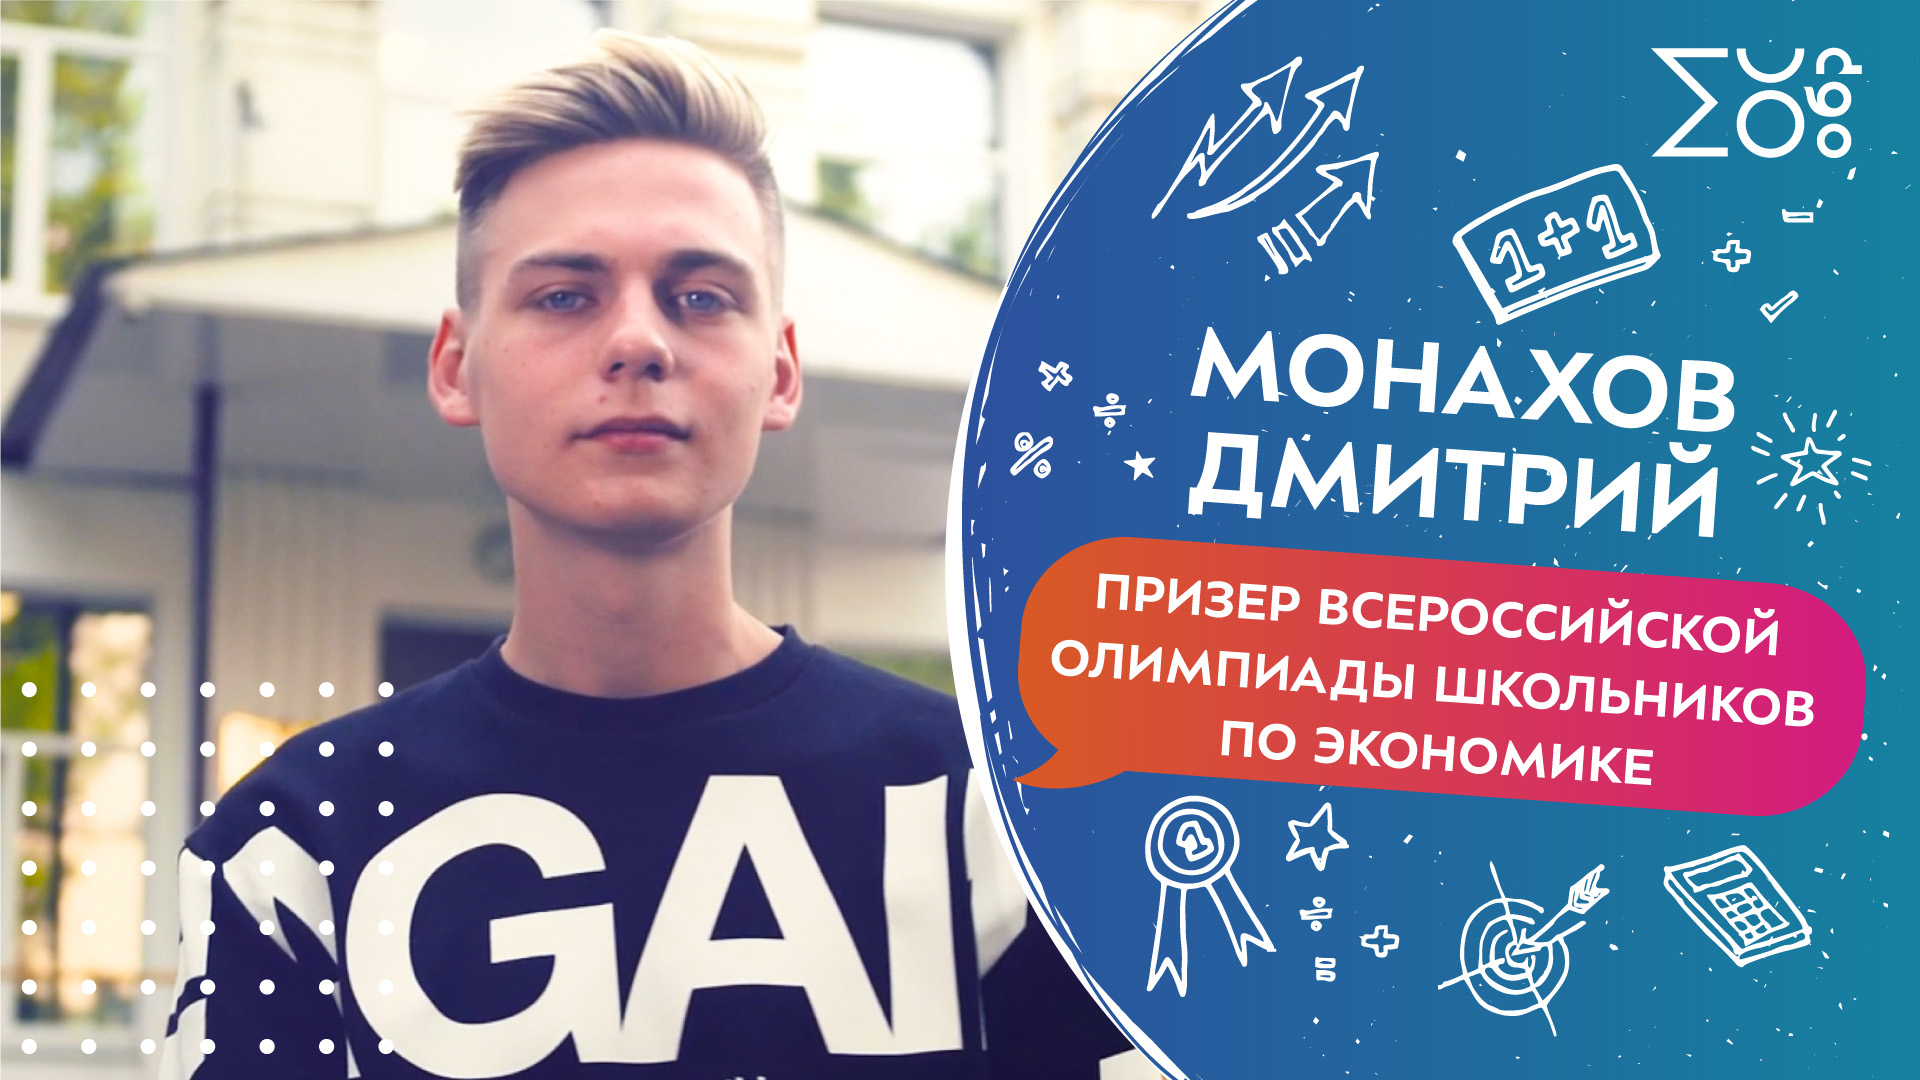 Монахов Дмитрий, призер Всероссийской олимпиады школьников по экономике